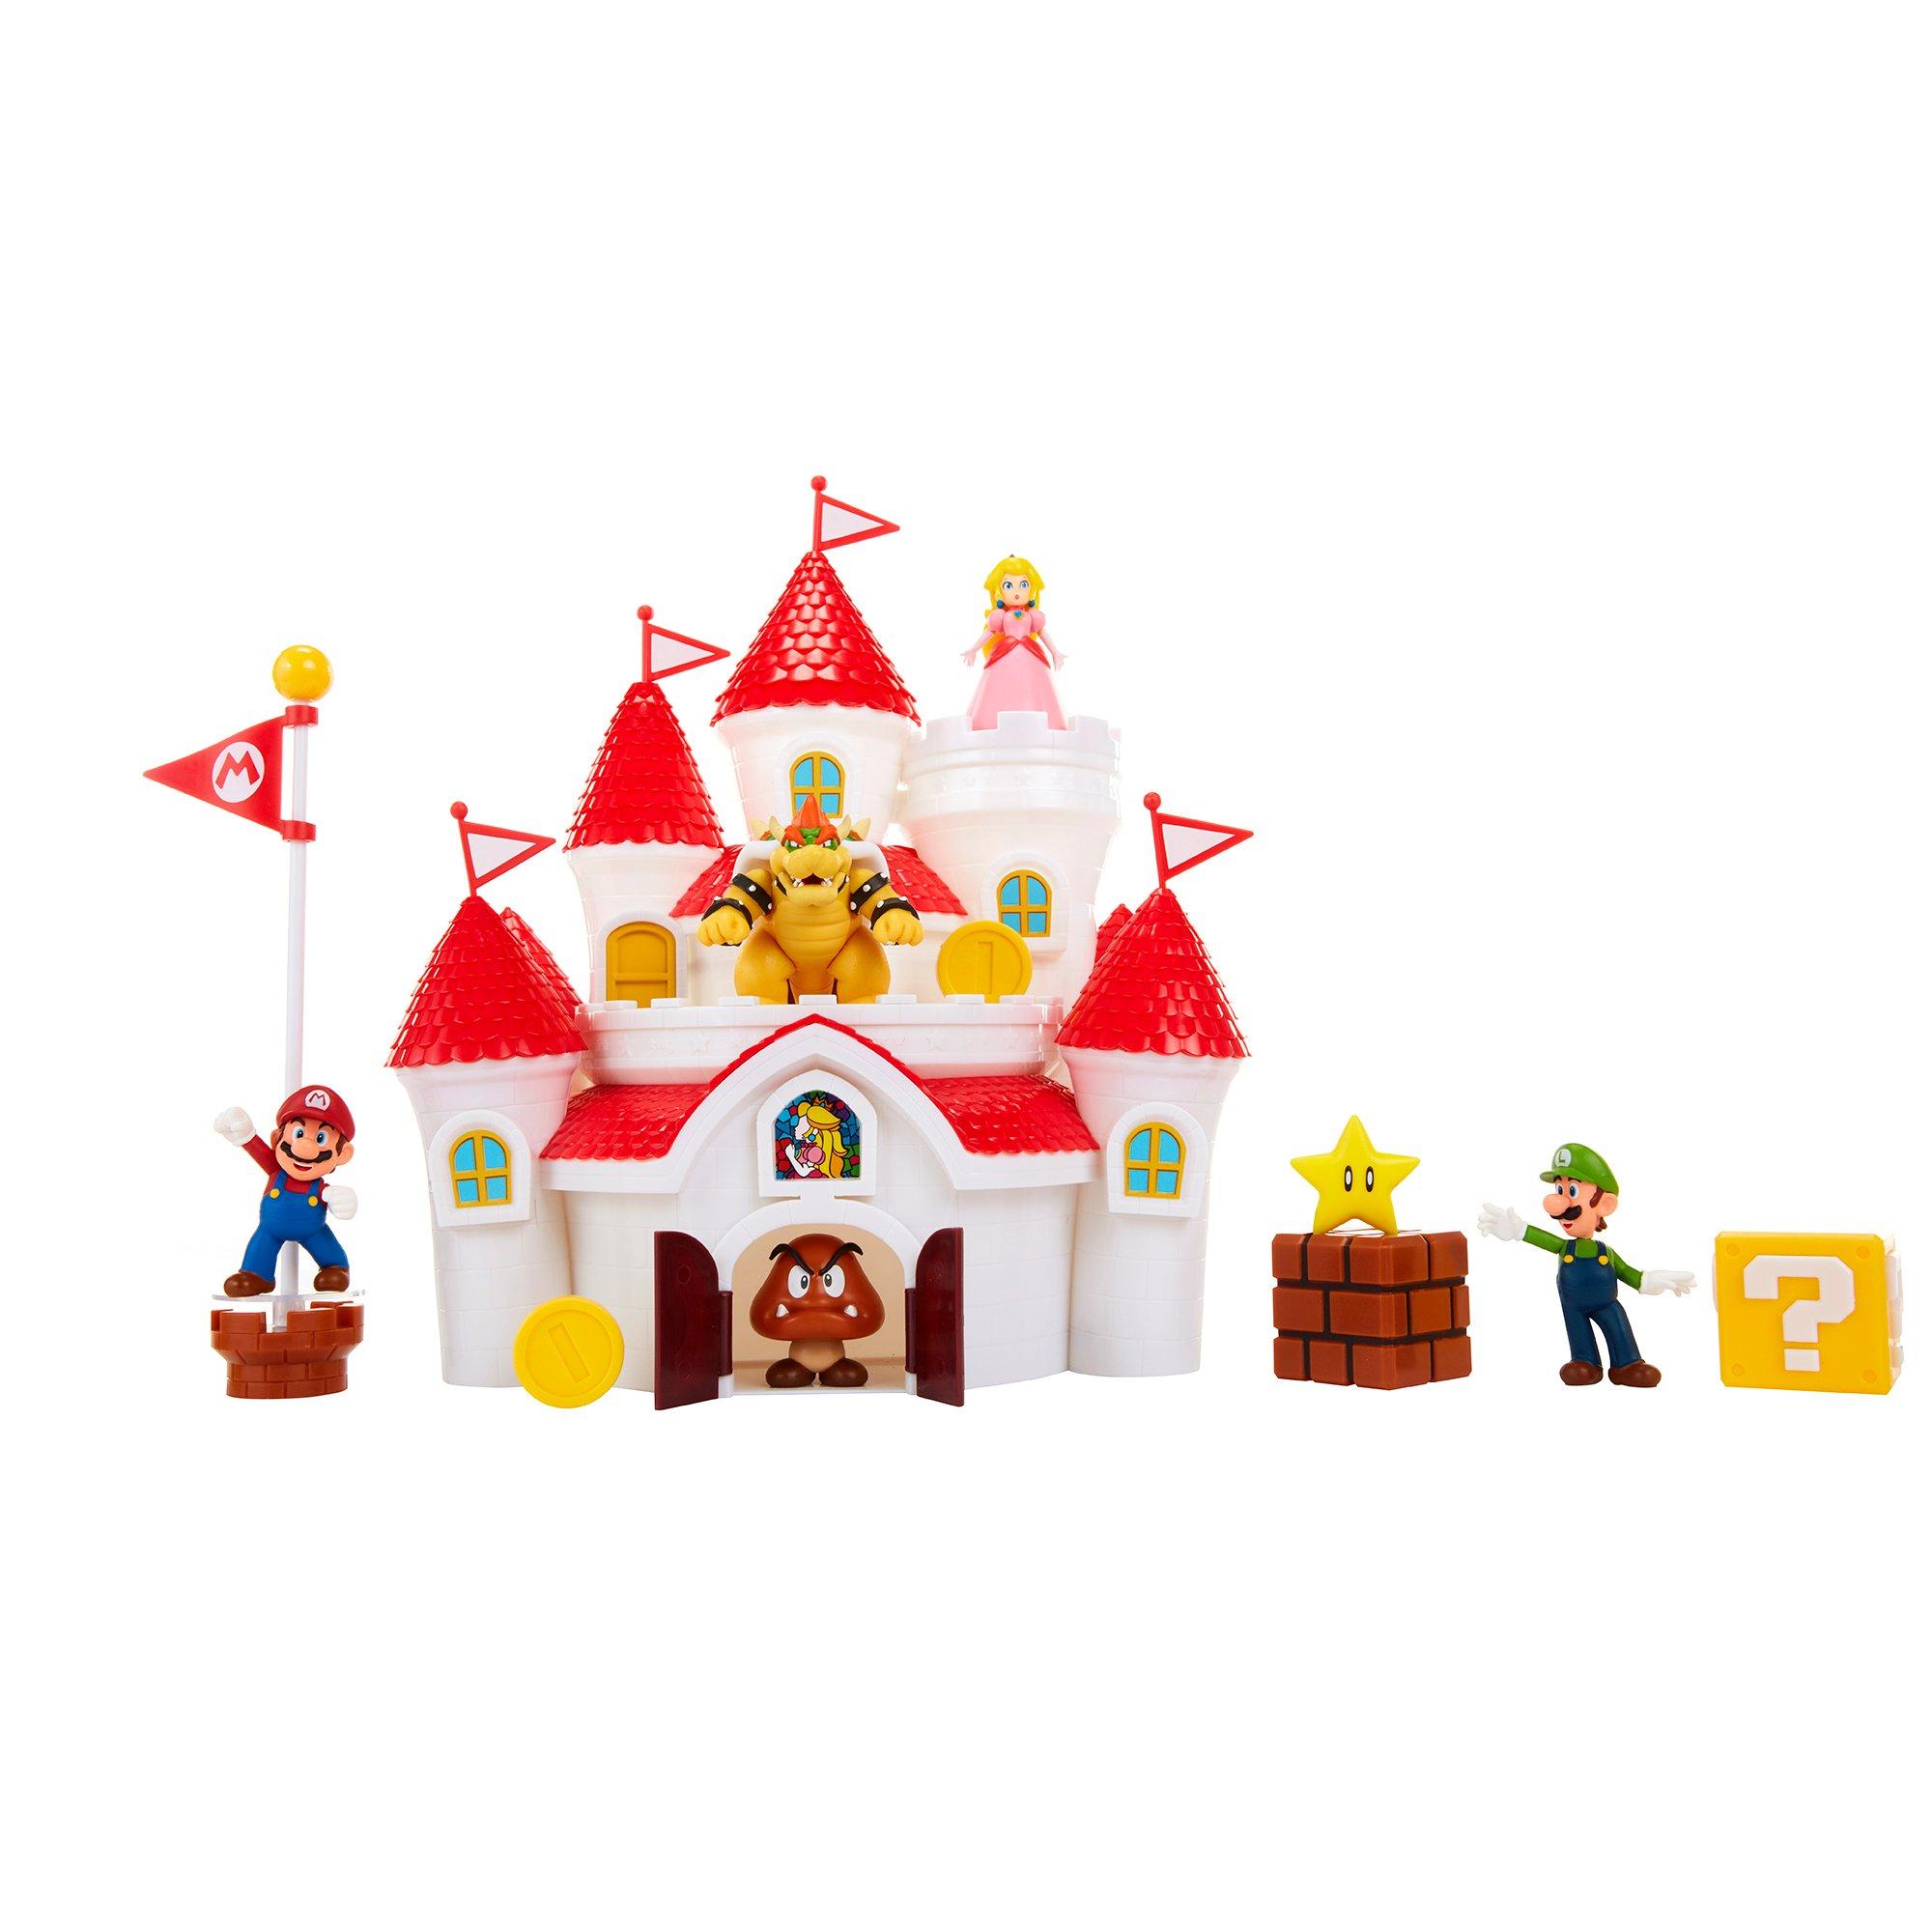 Jakks Pacific Super Mario Bros Deluxe Mushroom Kingdom Castle Playset 3769